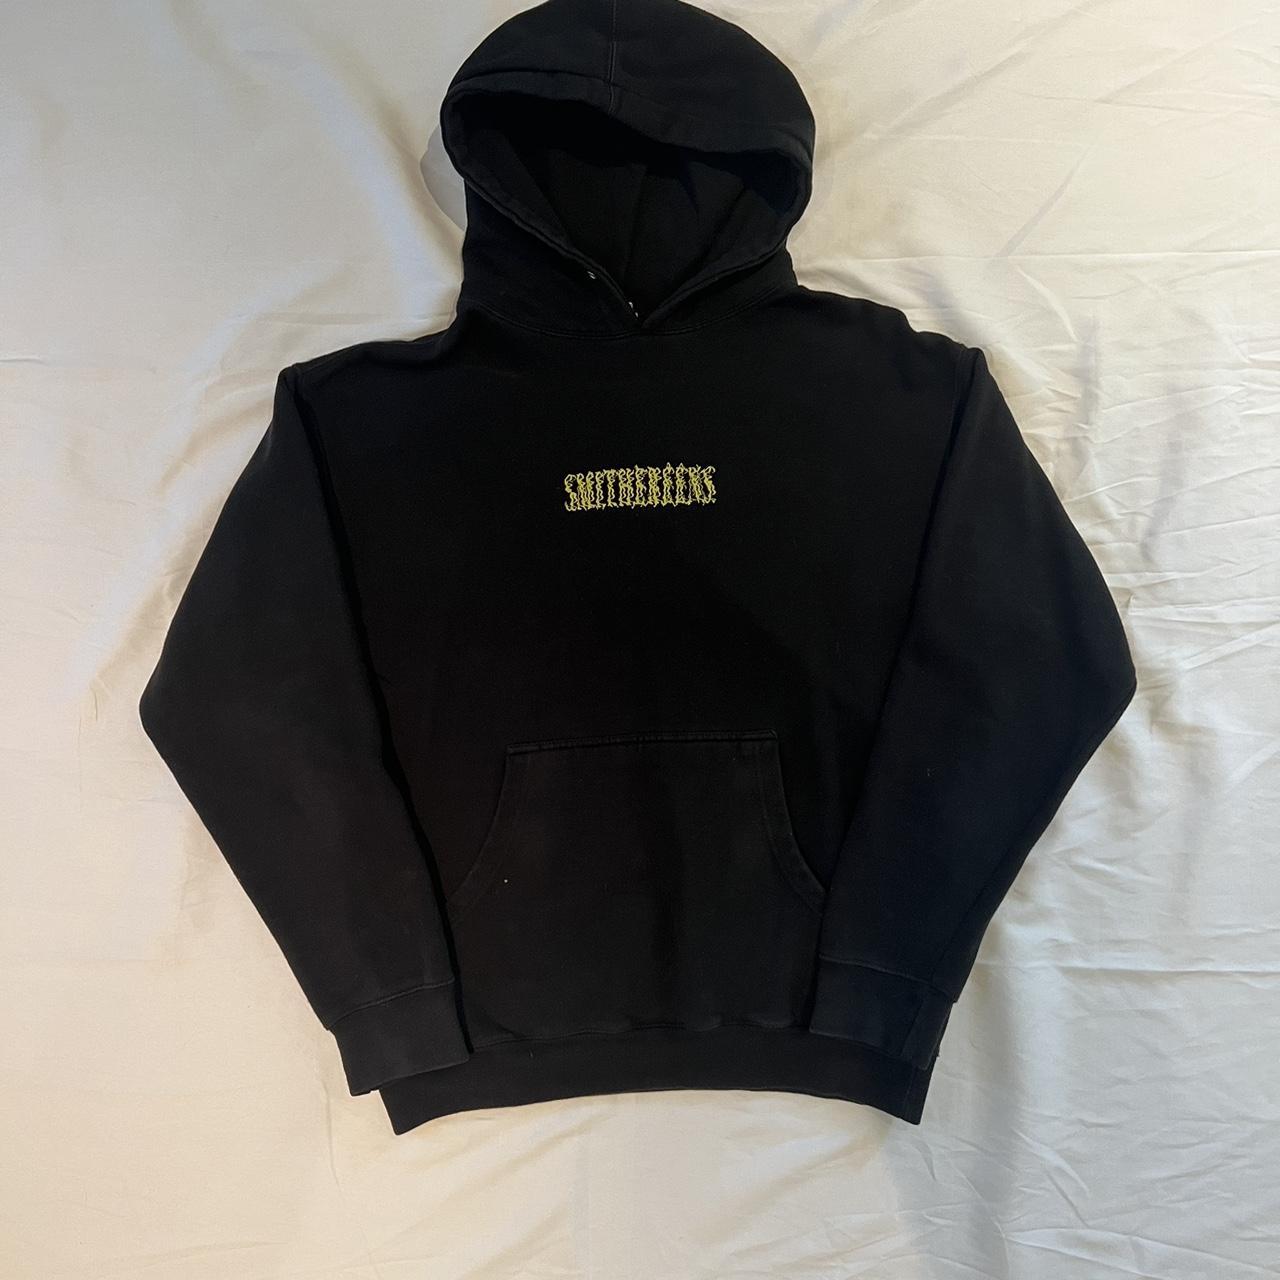 Joji Smithereens hoodie -size medium -good condo 8/10 - Depop